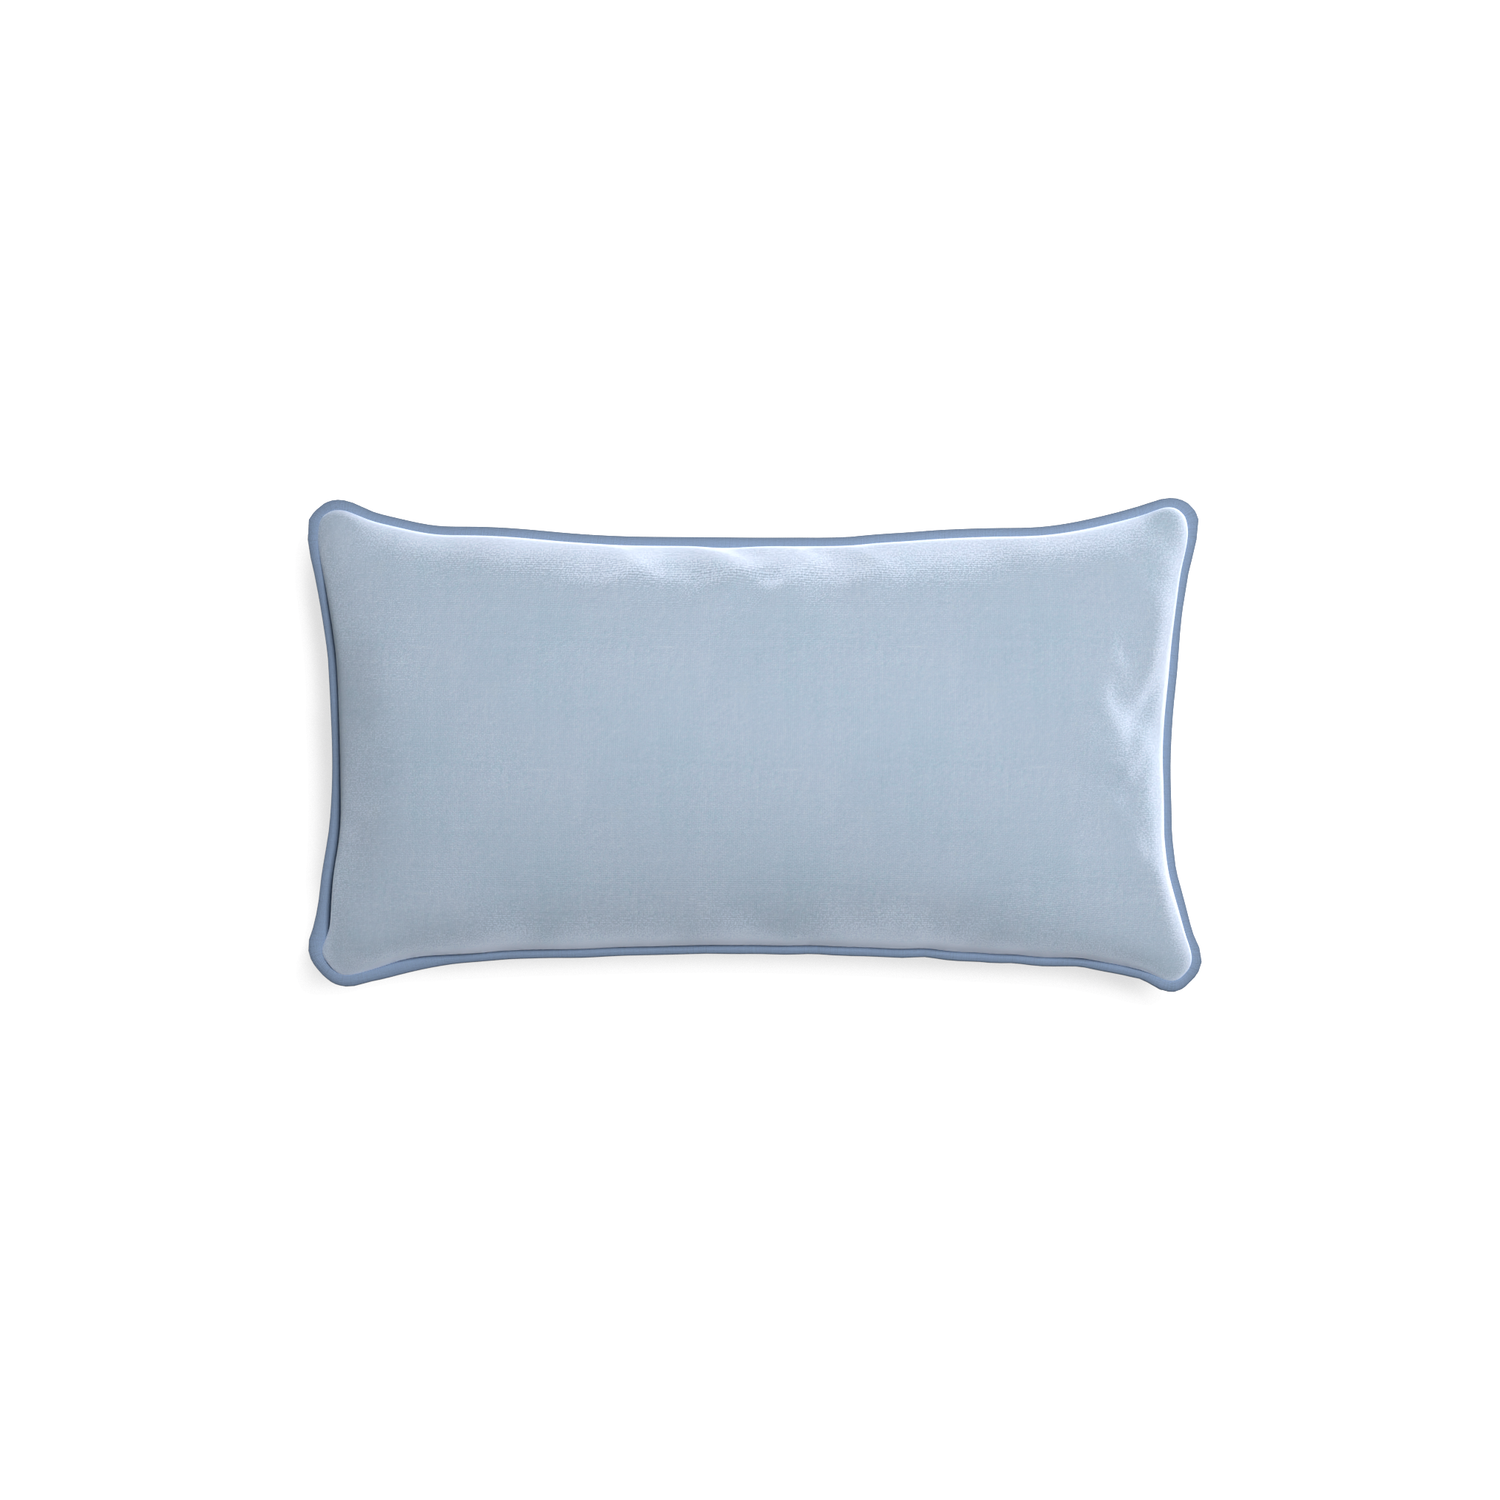 rectangle light blue velvet pillow with sky blue piping